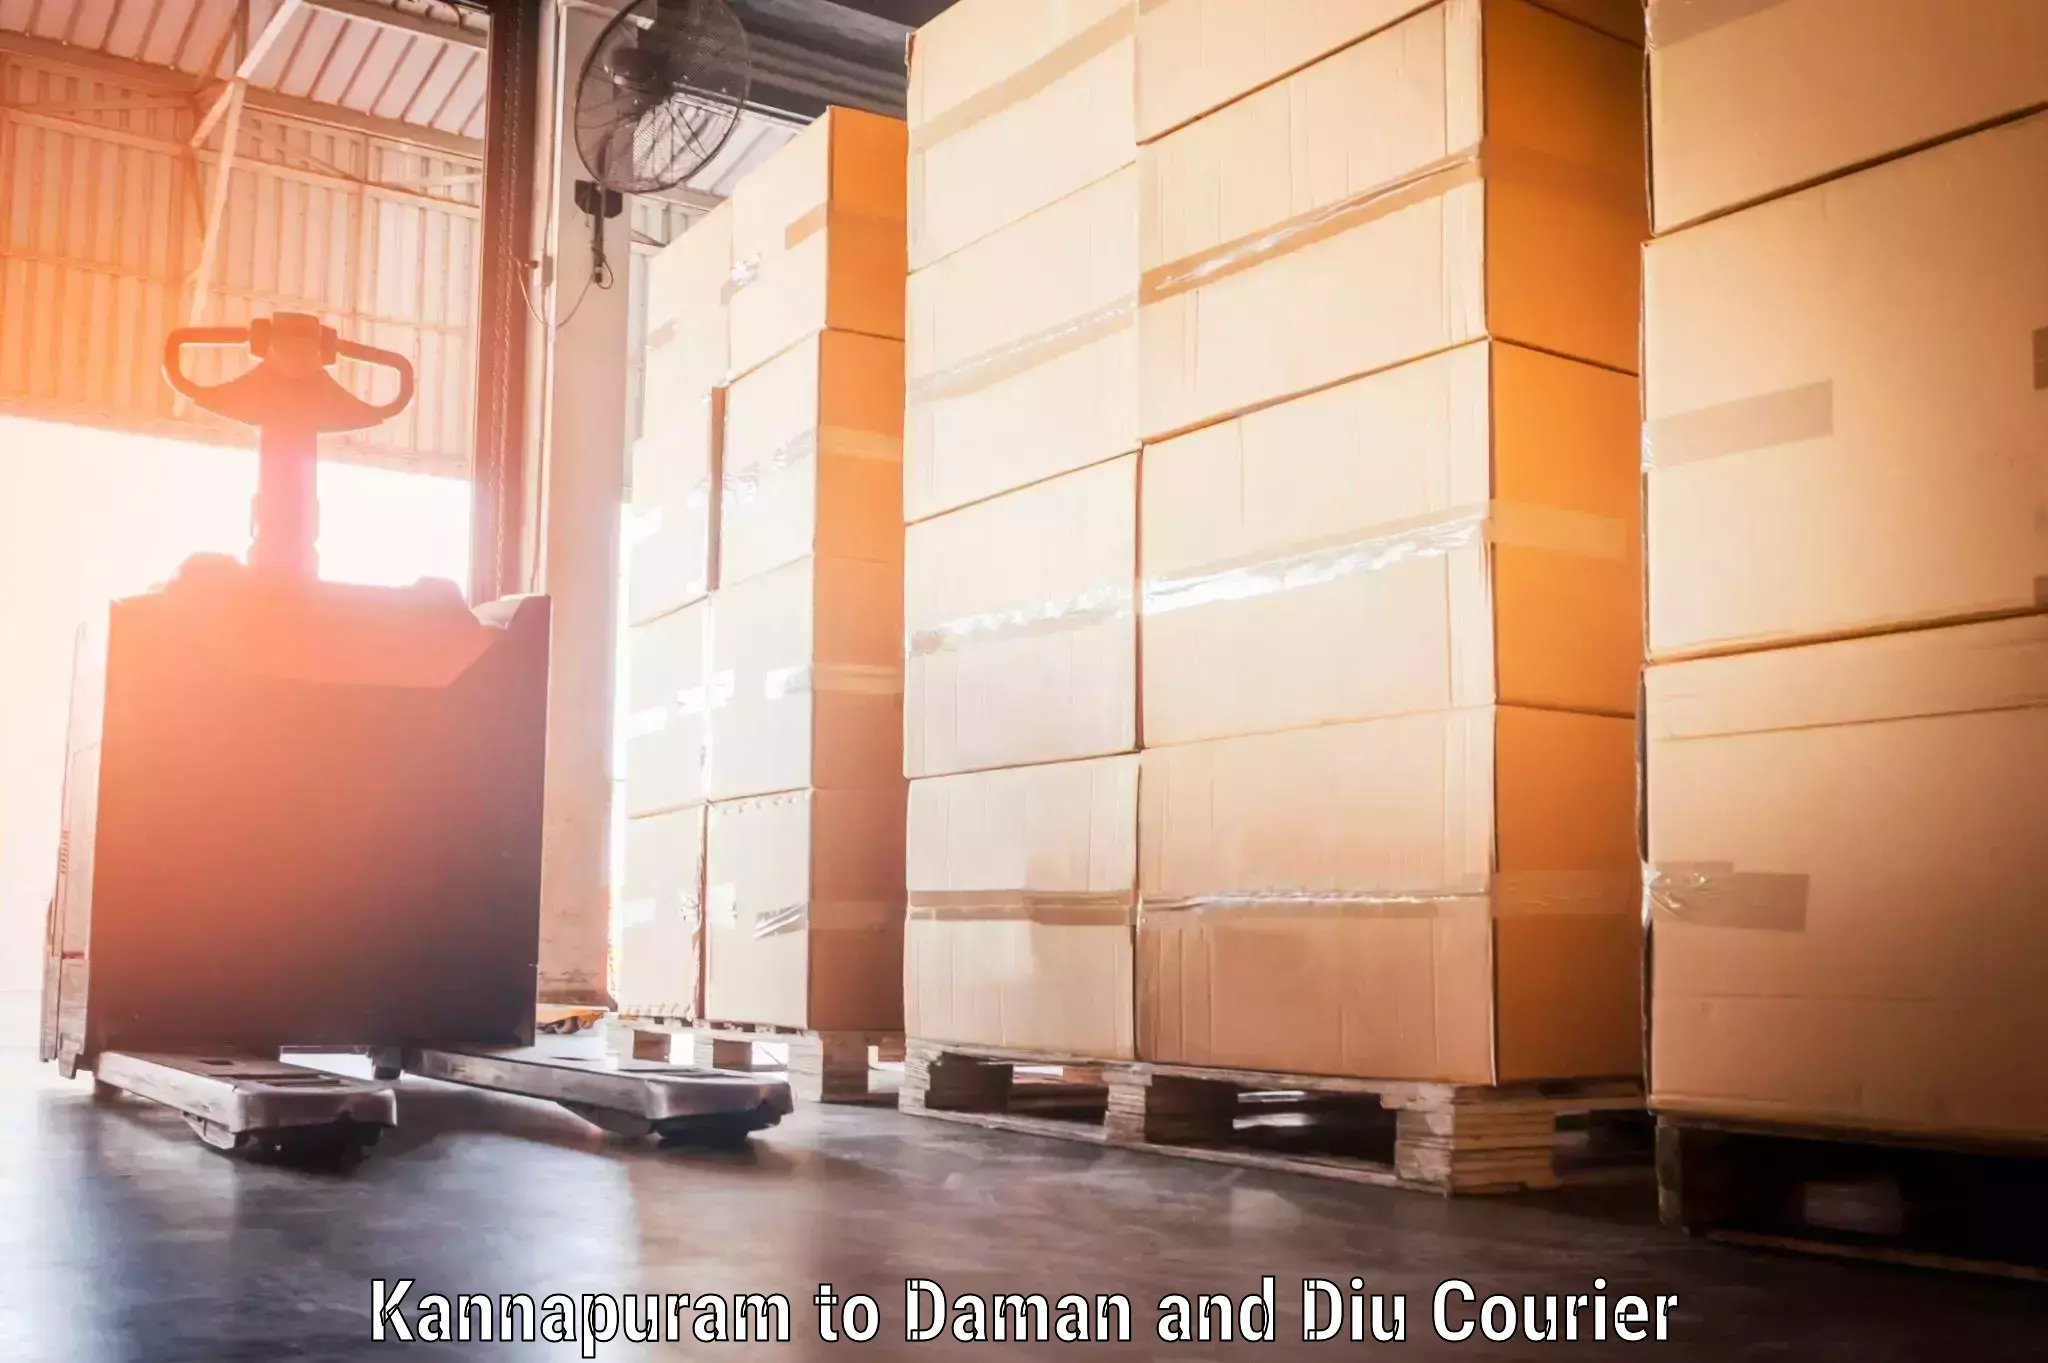 Baggage courier logistics Kannapuram to Daman